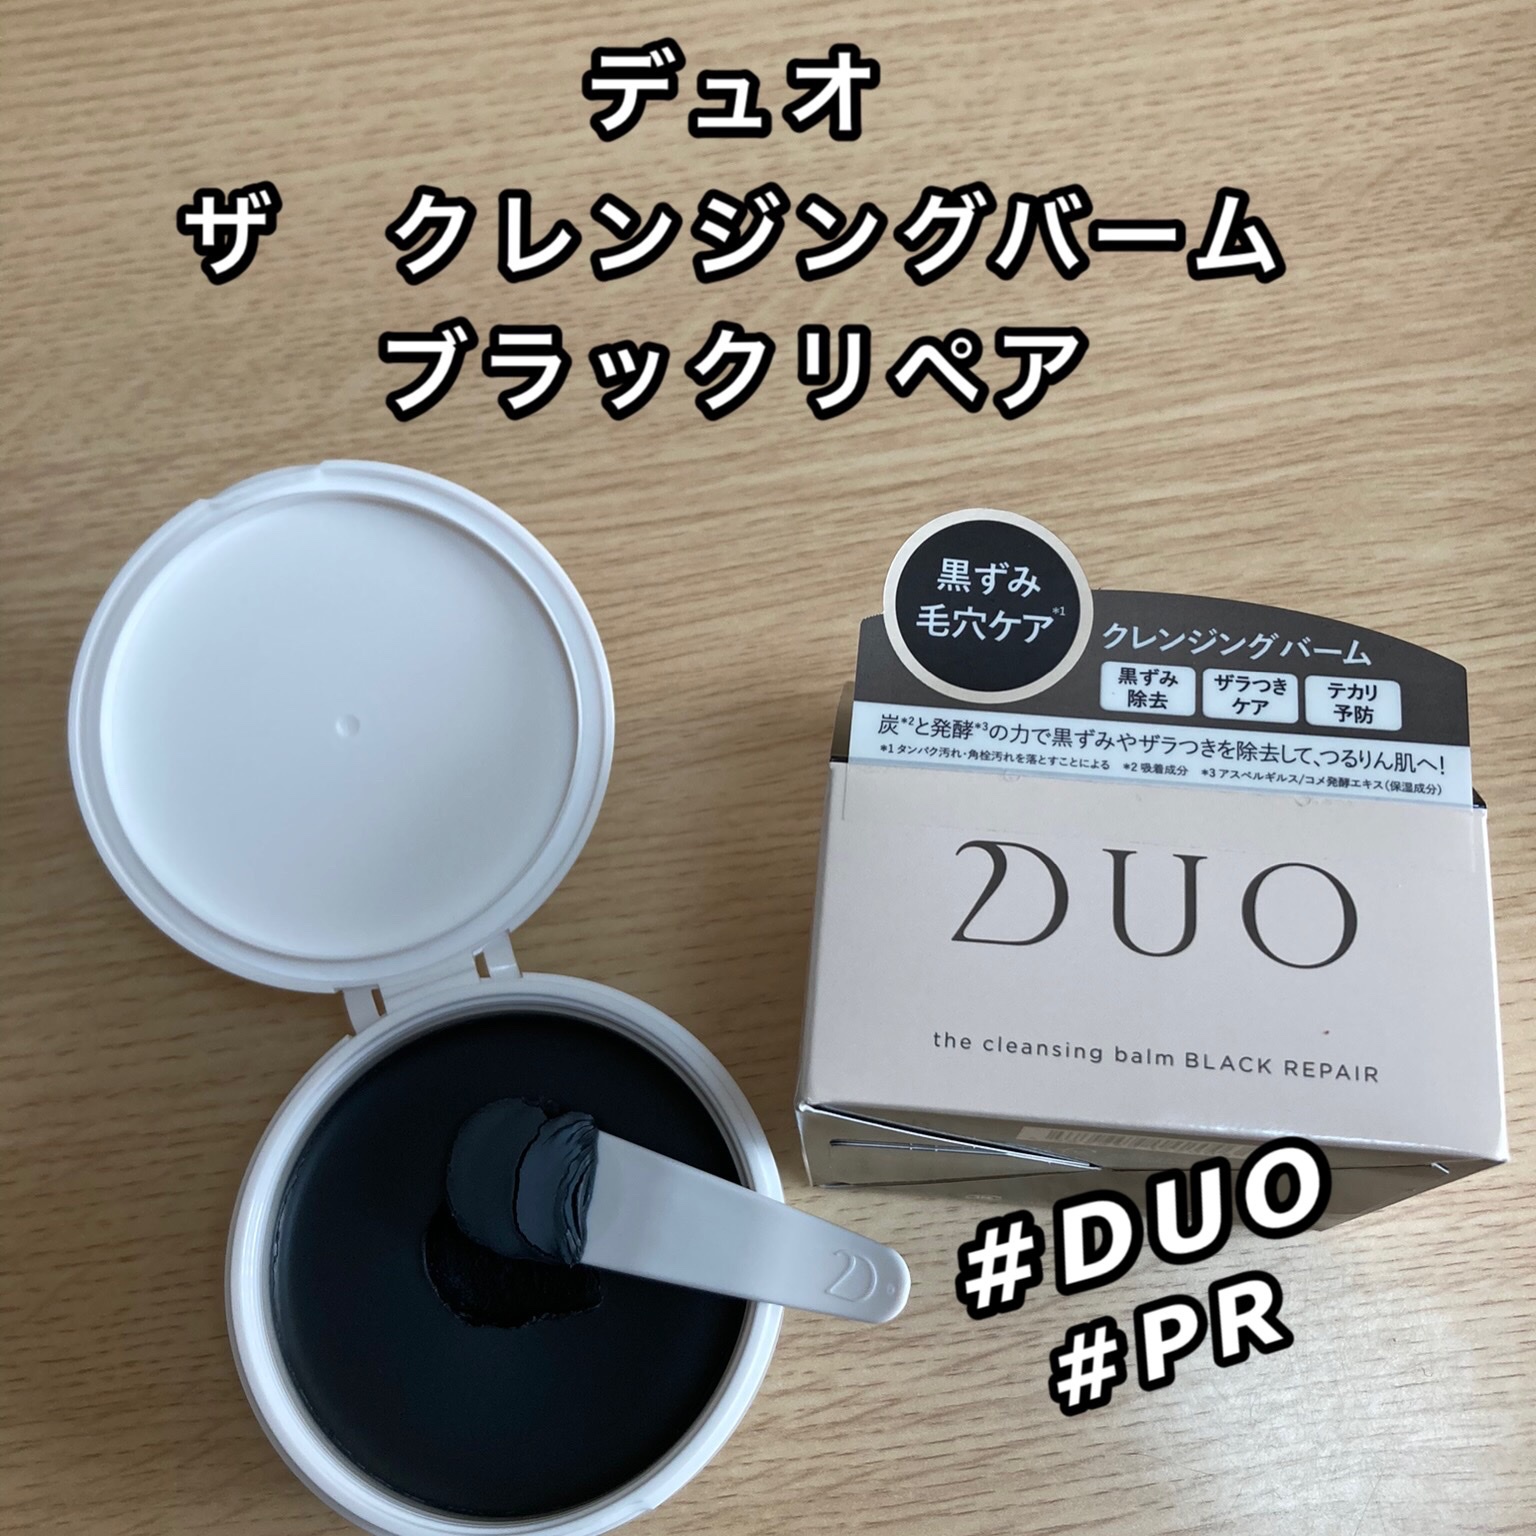 DUO(デュオ) / ザ クレンジングバーム ブラックリペア 100gの公式商品 ...